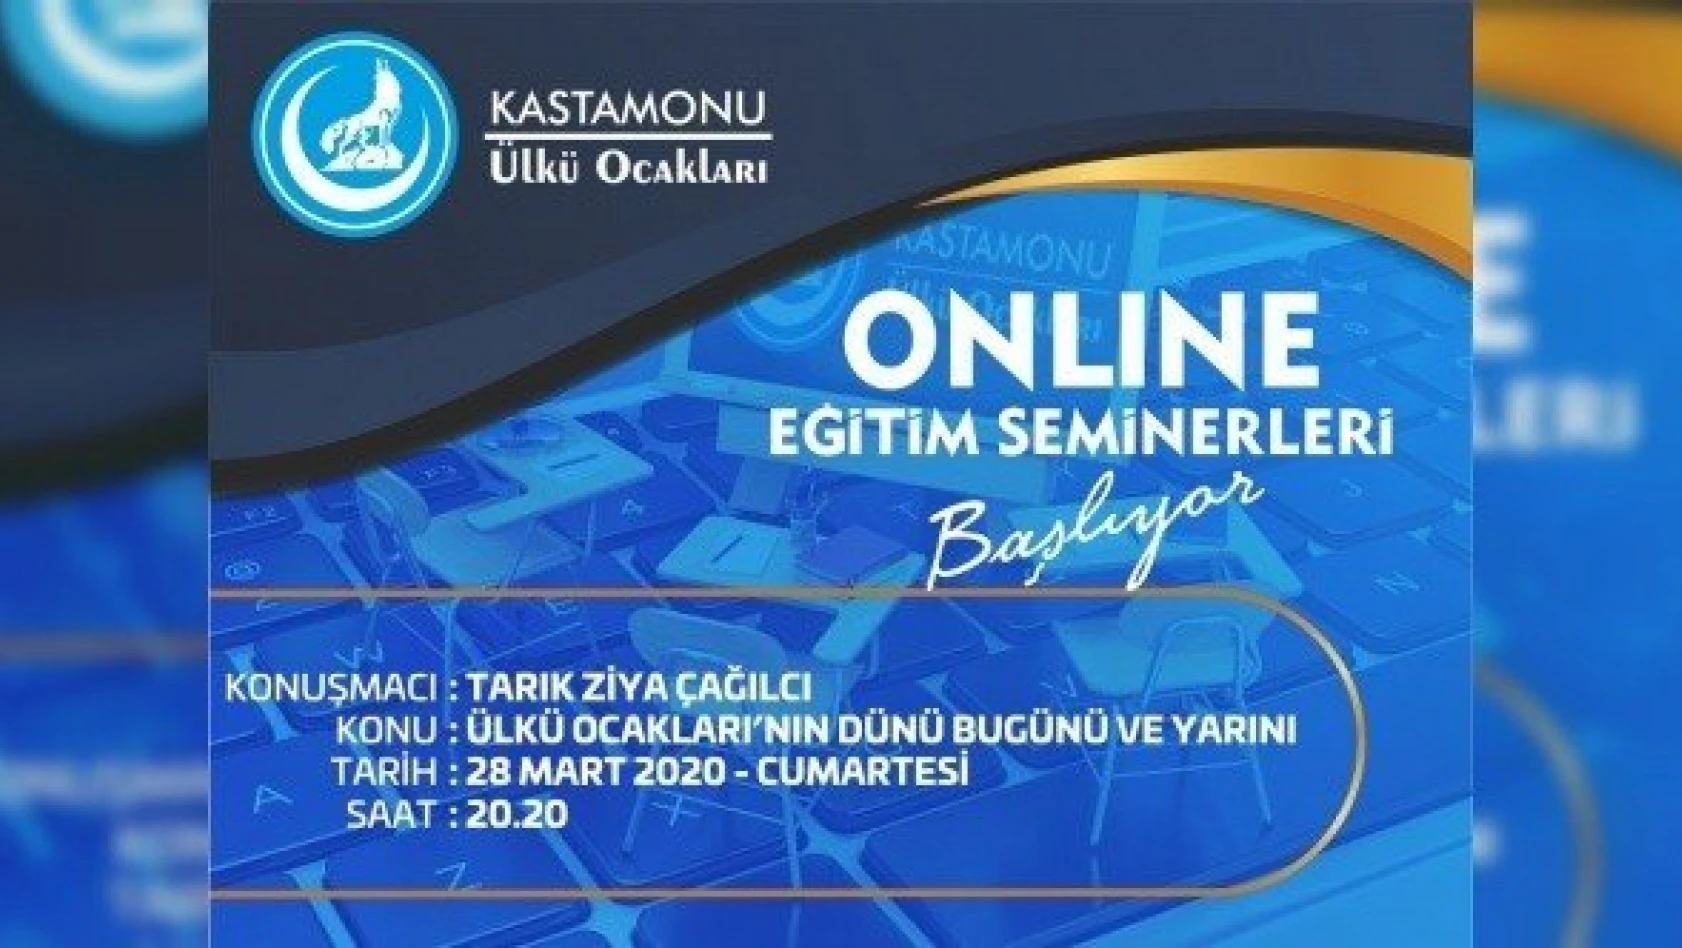 Kastamonu Ülkü Ocakları kendi online seminer teknolojisini geliştirdi